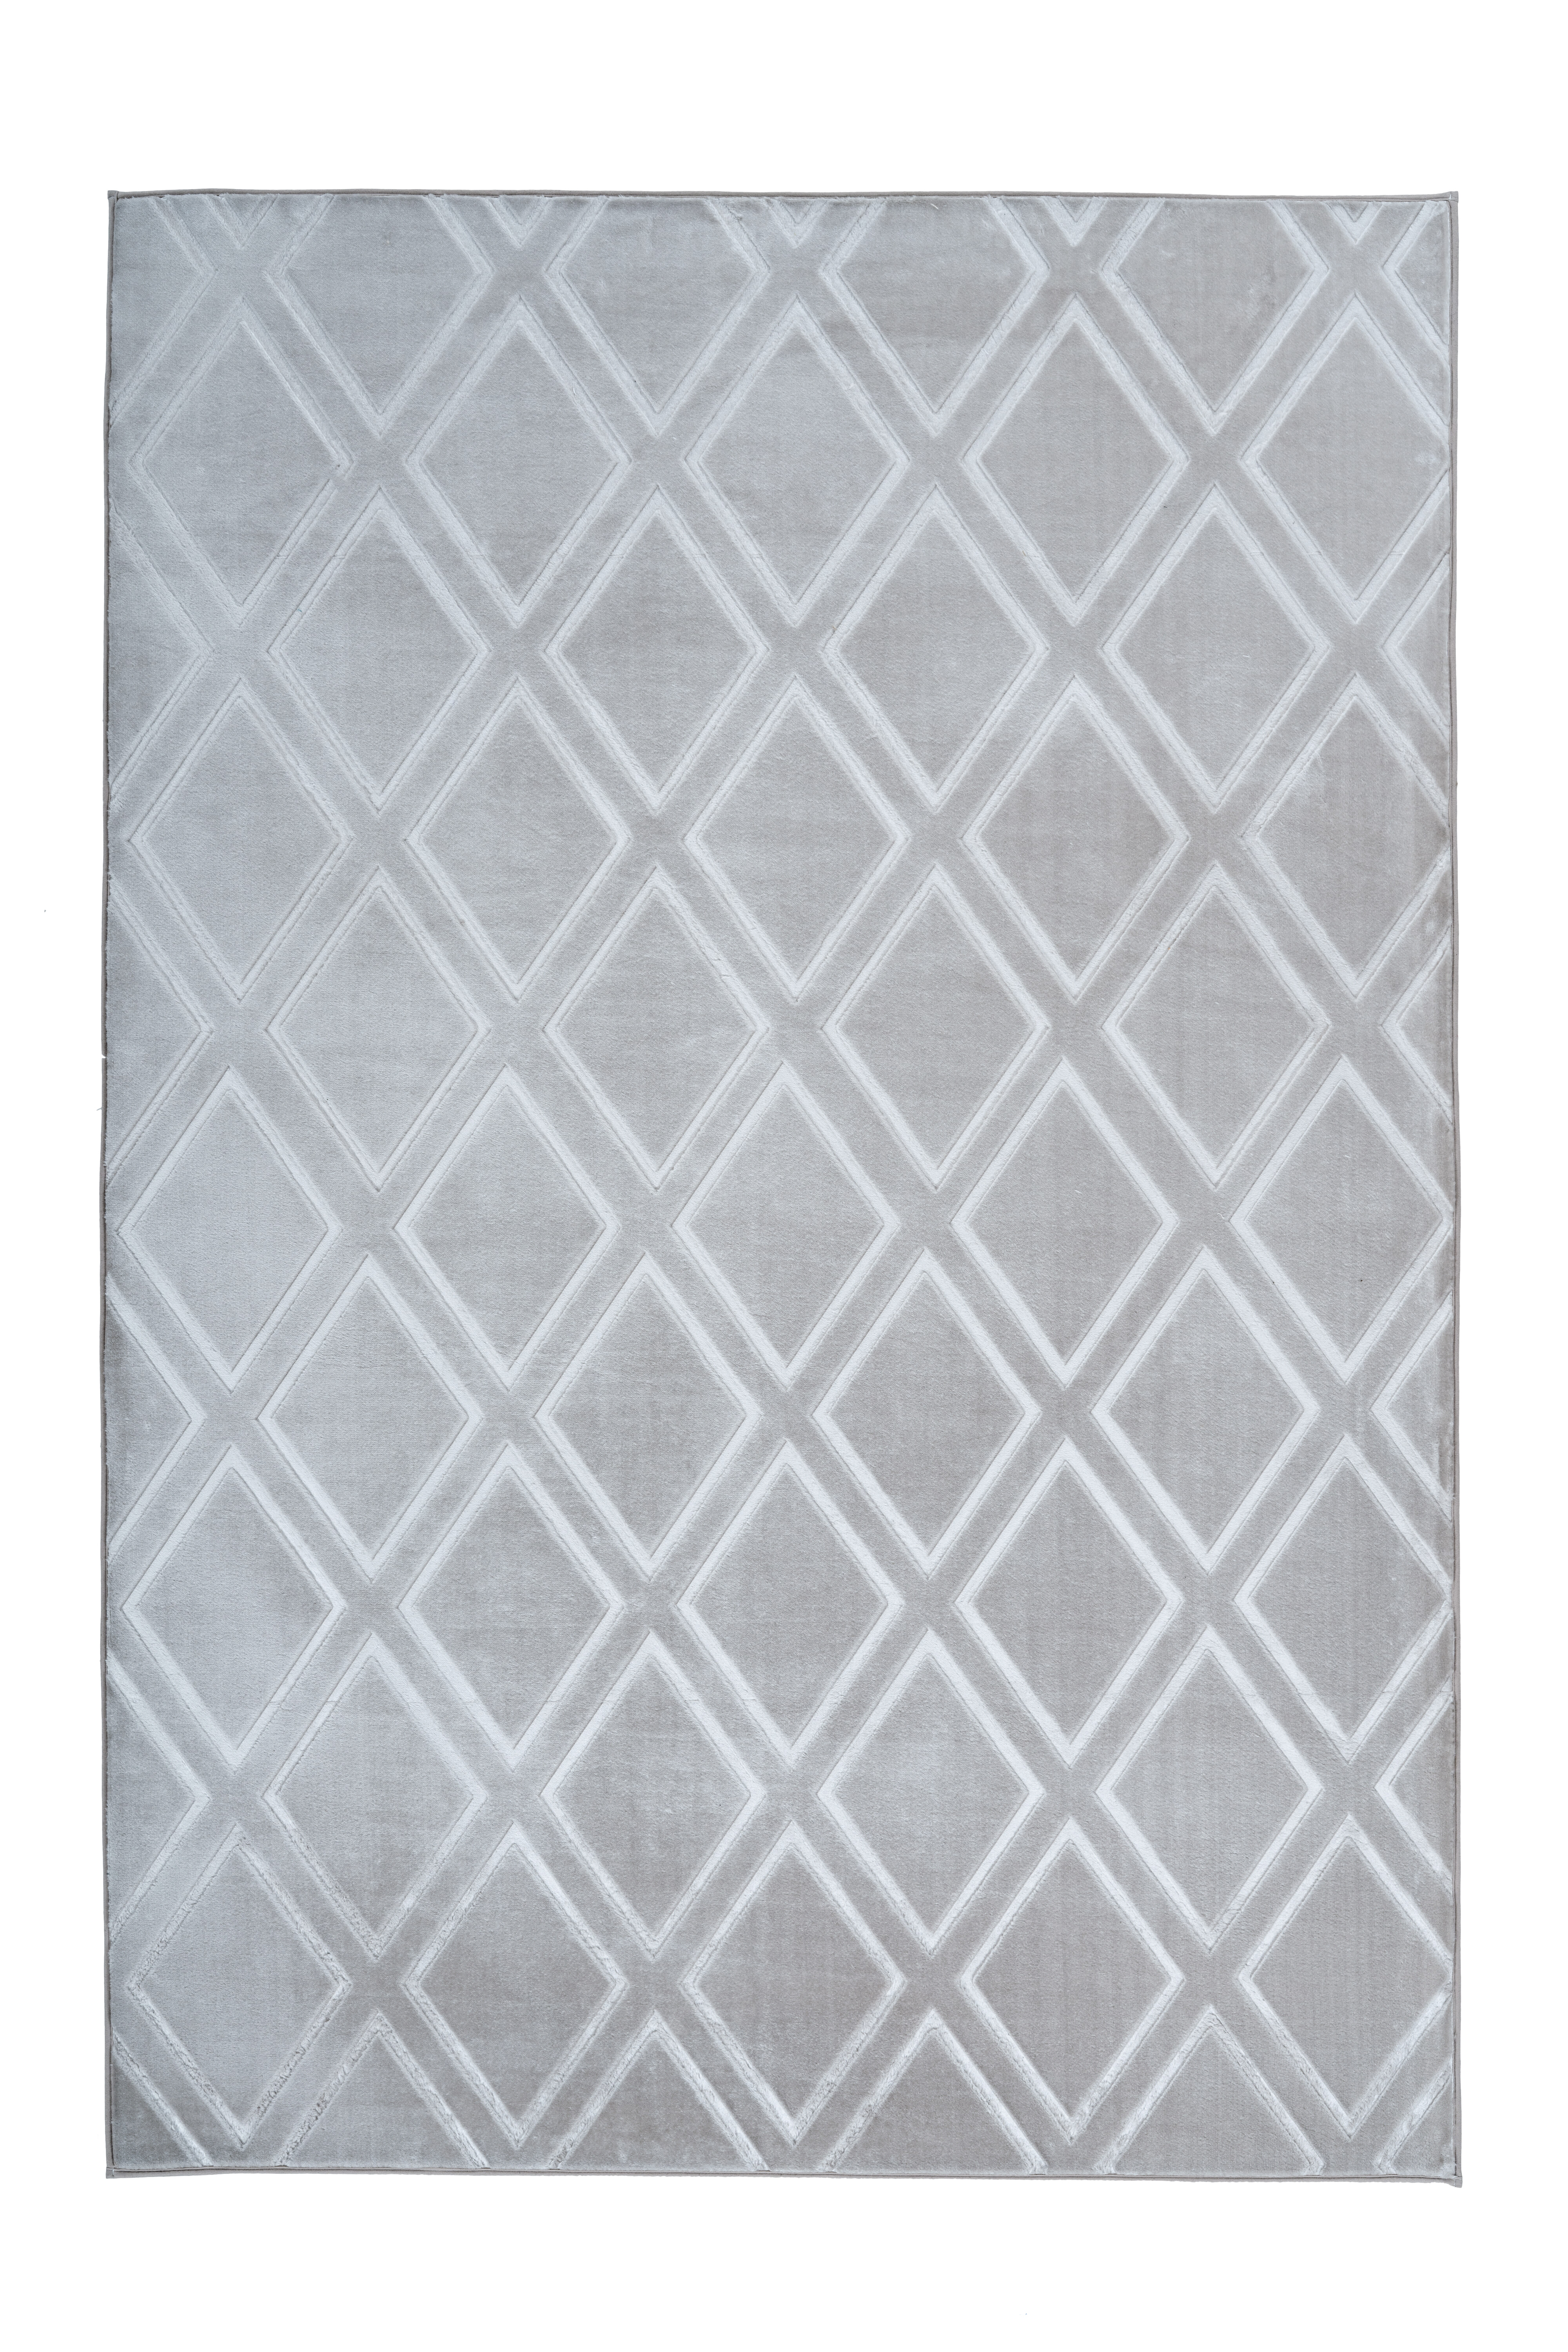 Kayoom Vloerkleed 'Monroe 300' kleur grijs, 160 x 230cm